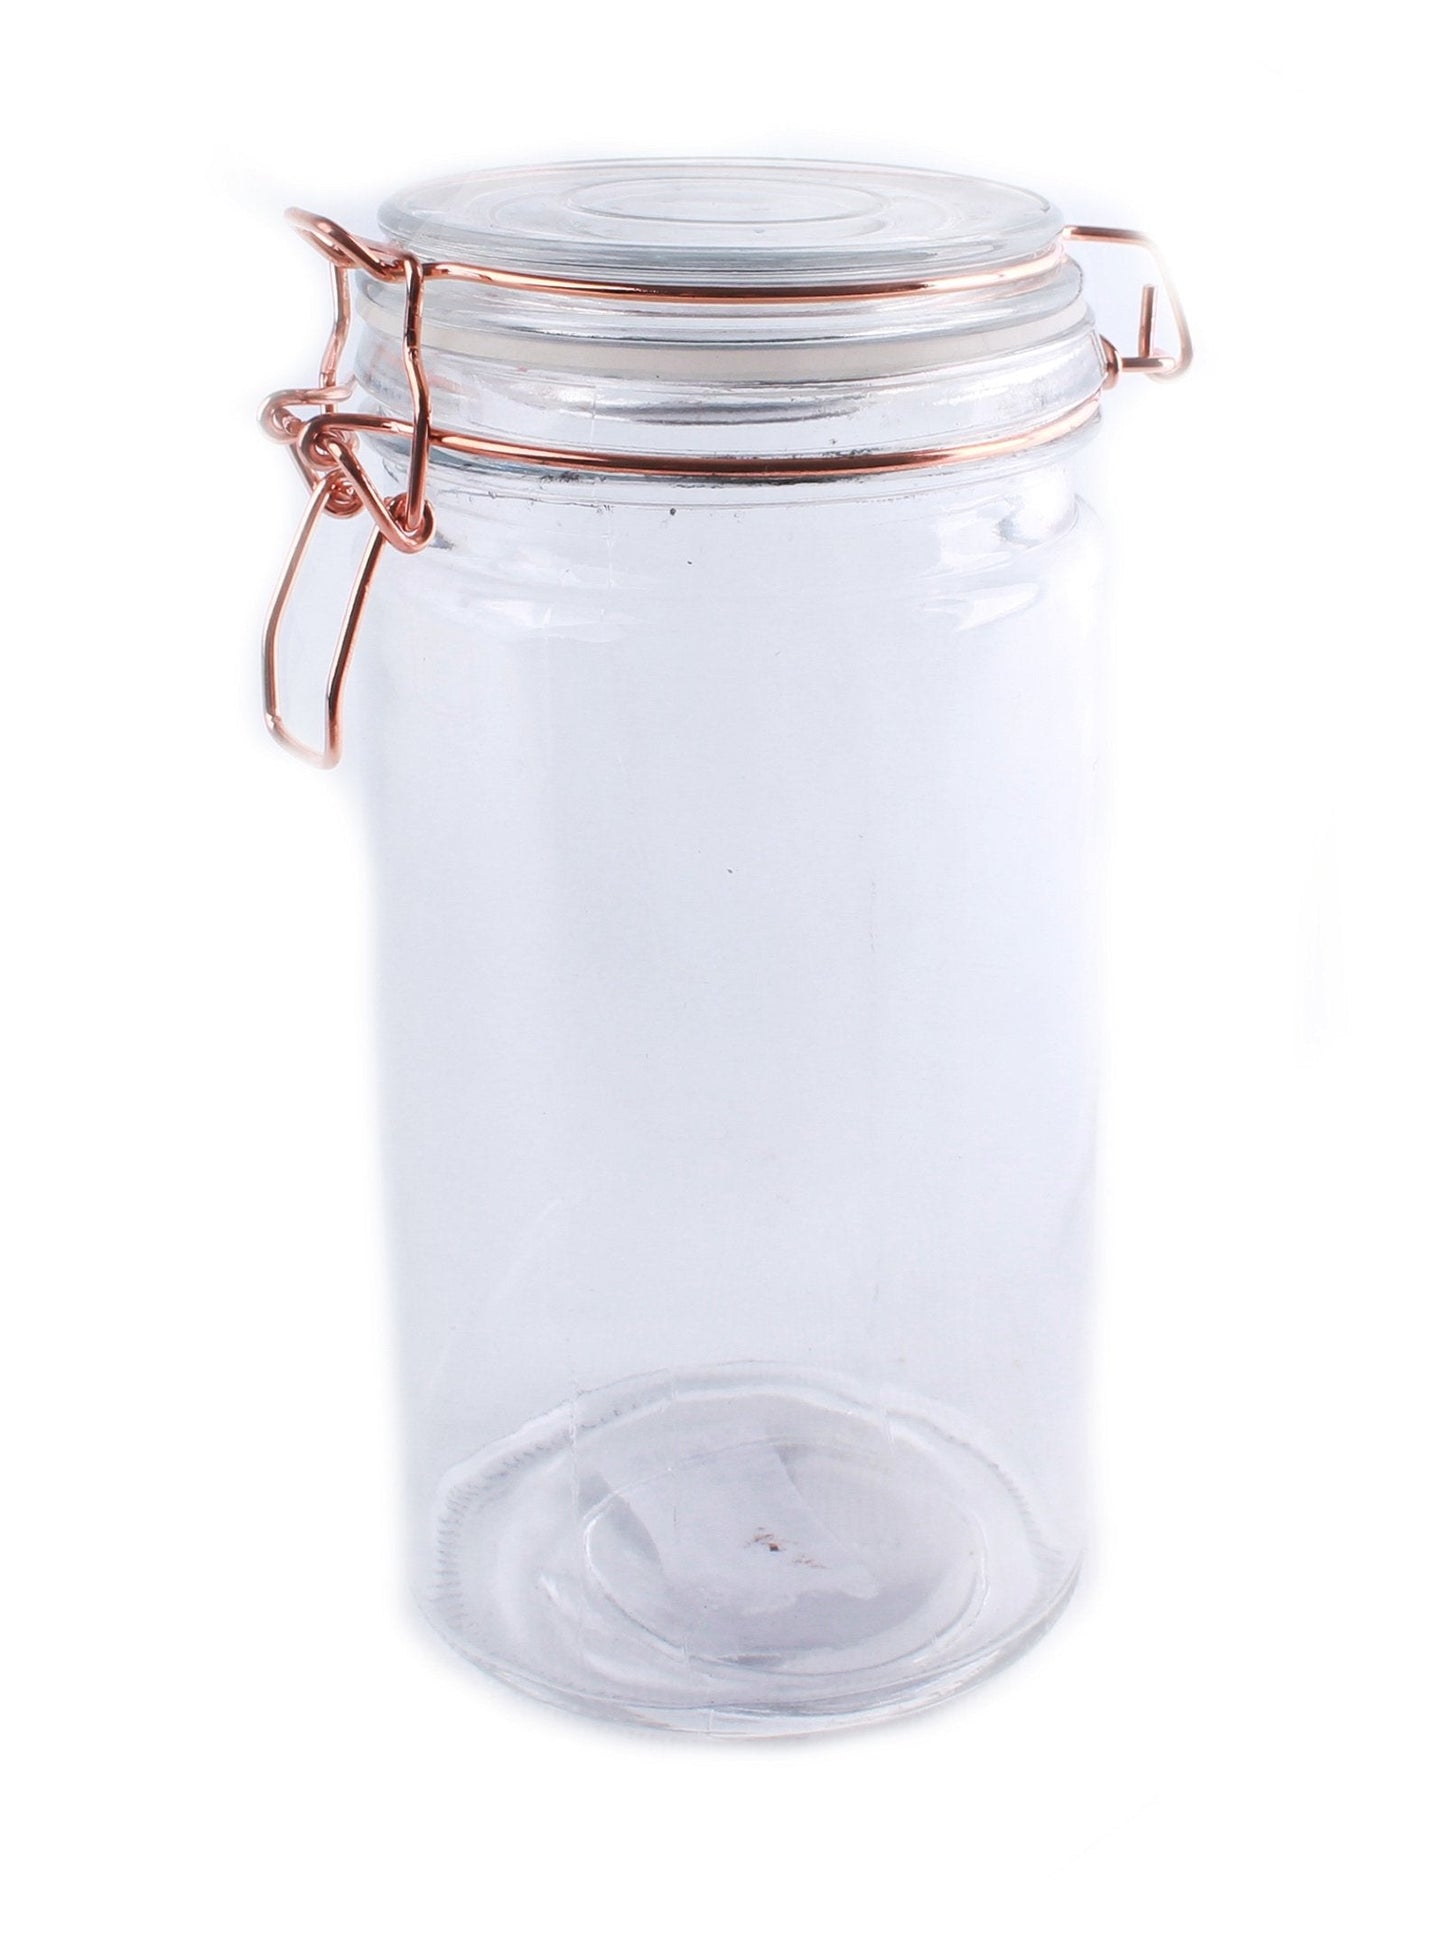 Storage Jar, Glass with Copper Wire Fastening